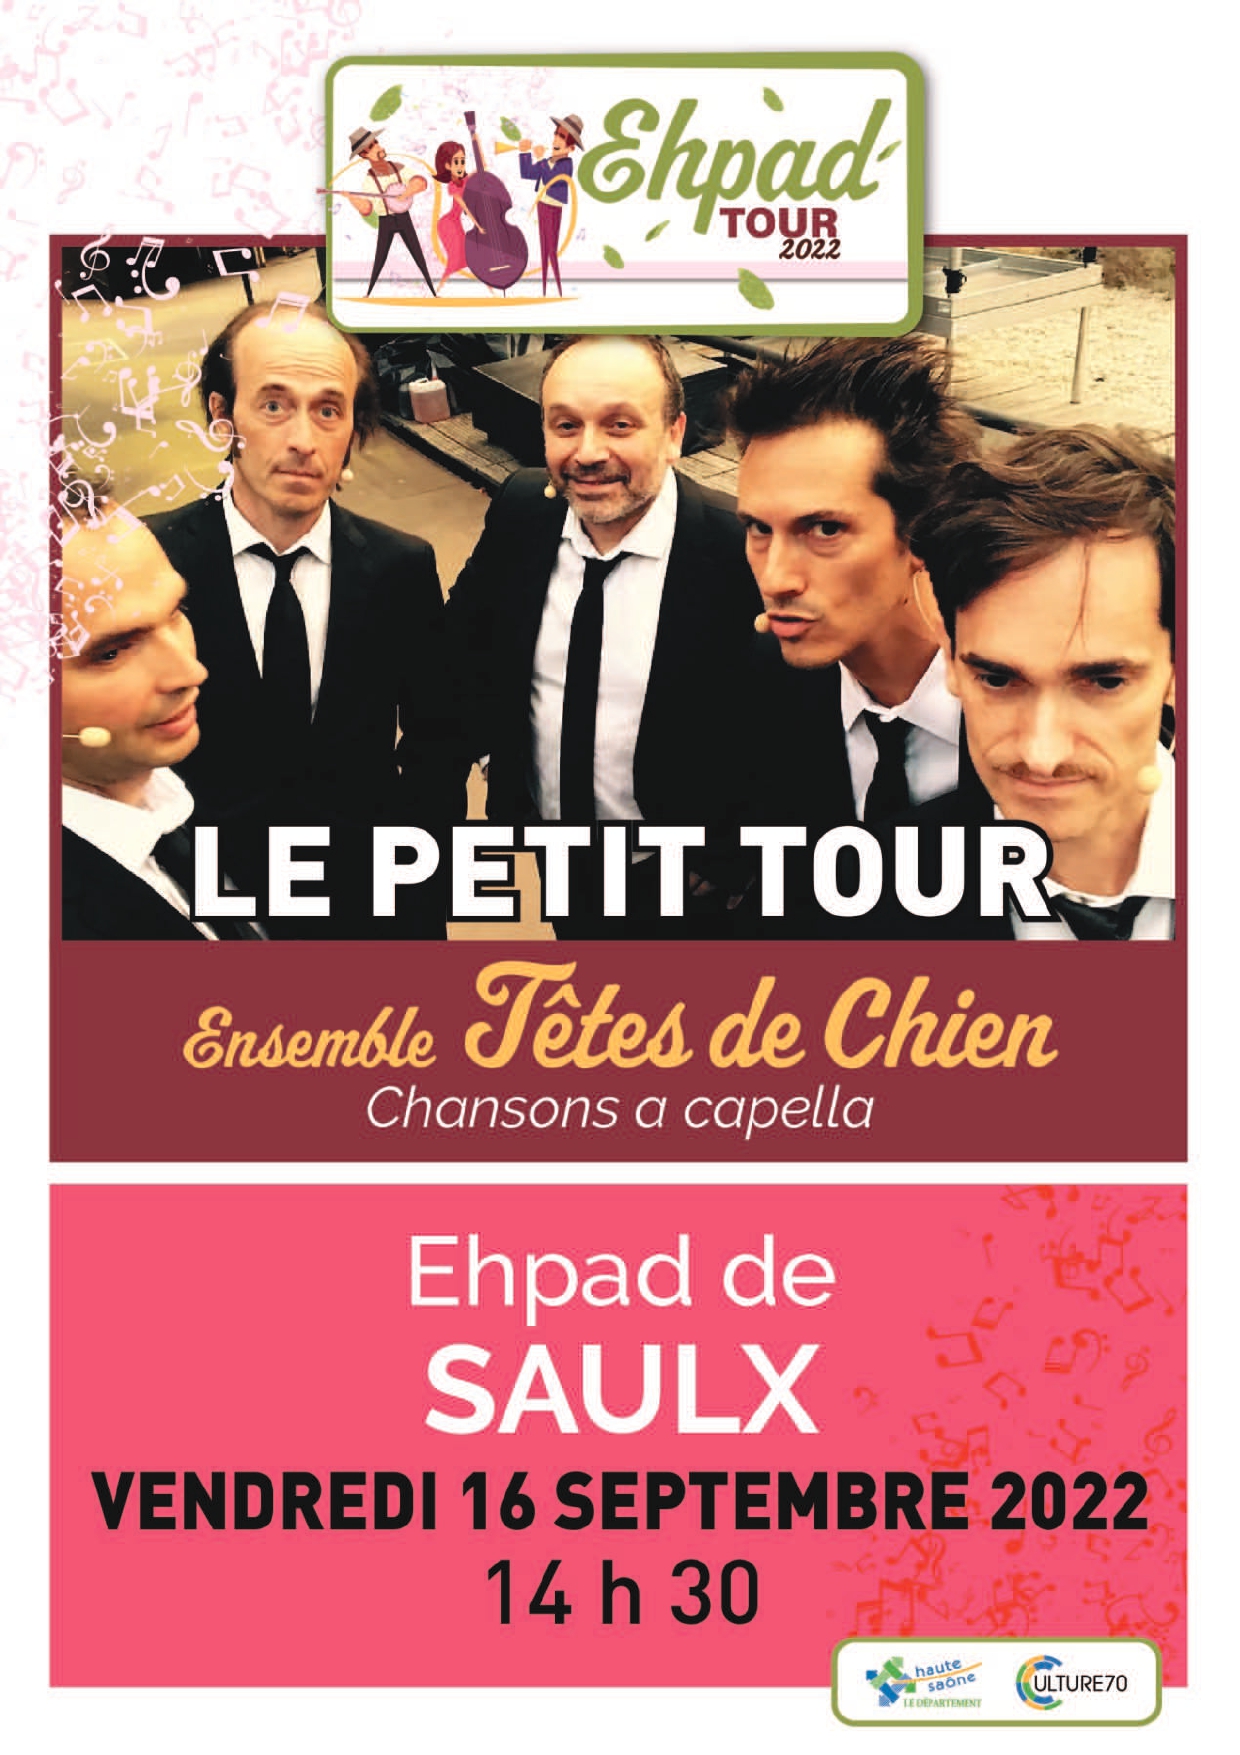 EHPAD Tour 2022 16/09 SAULX